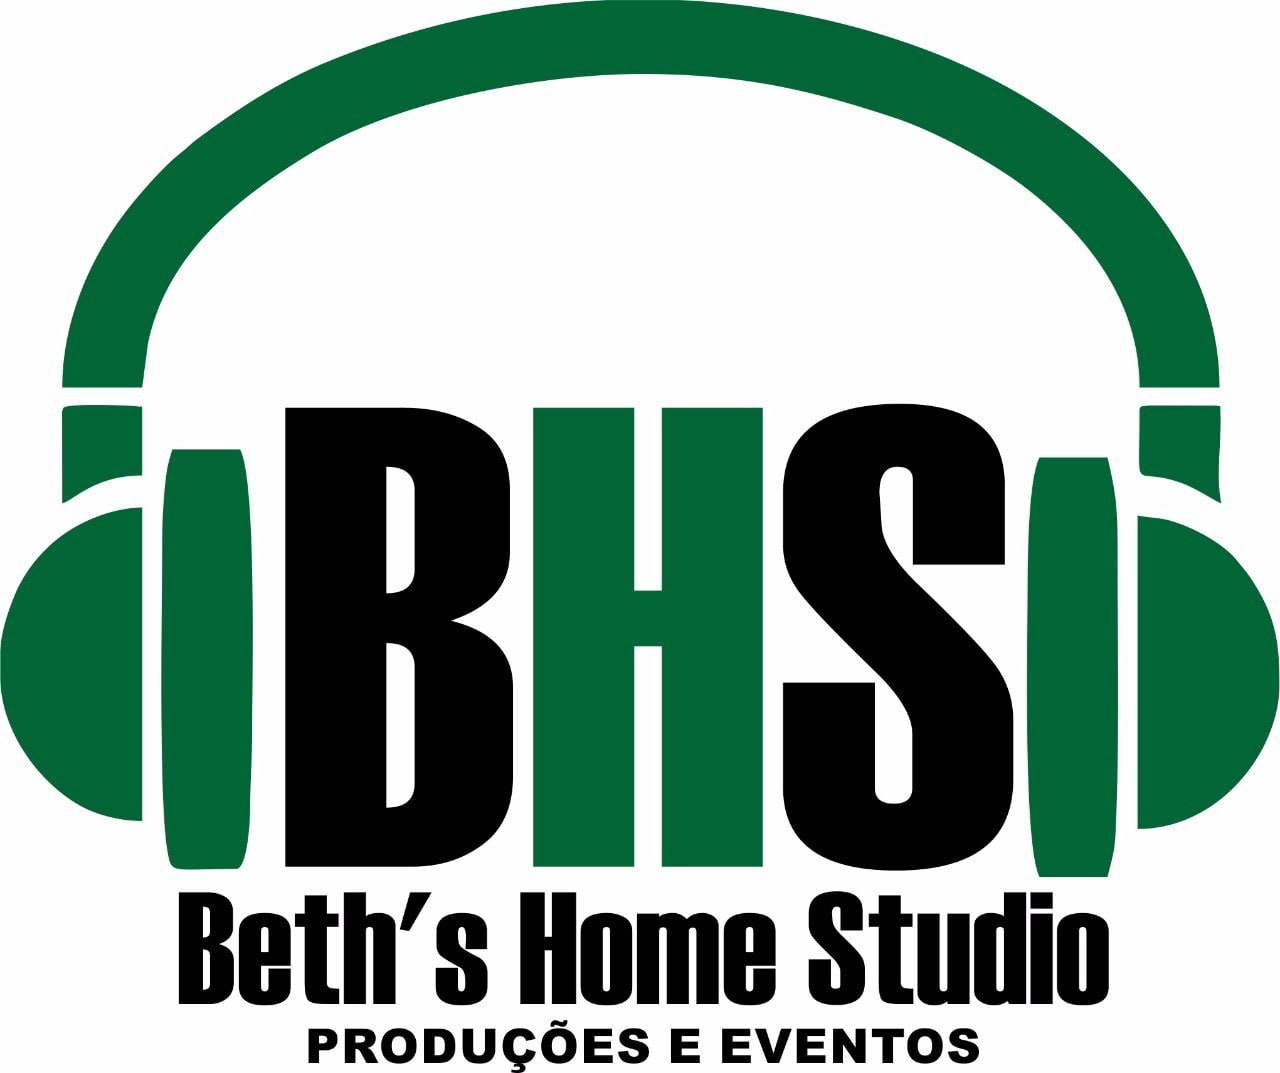 BHS Home Studio Produções